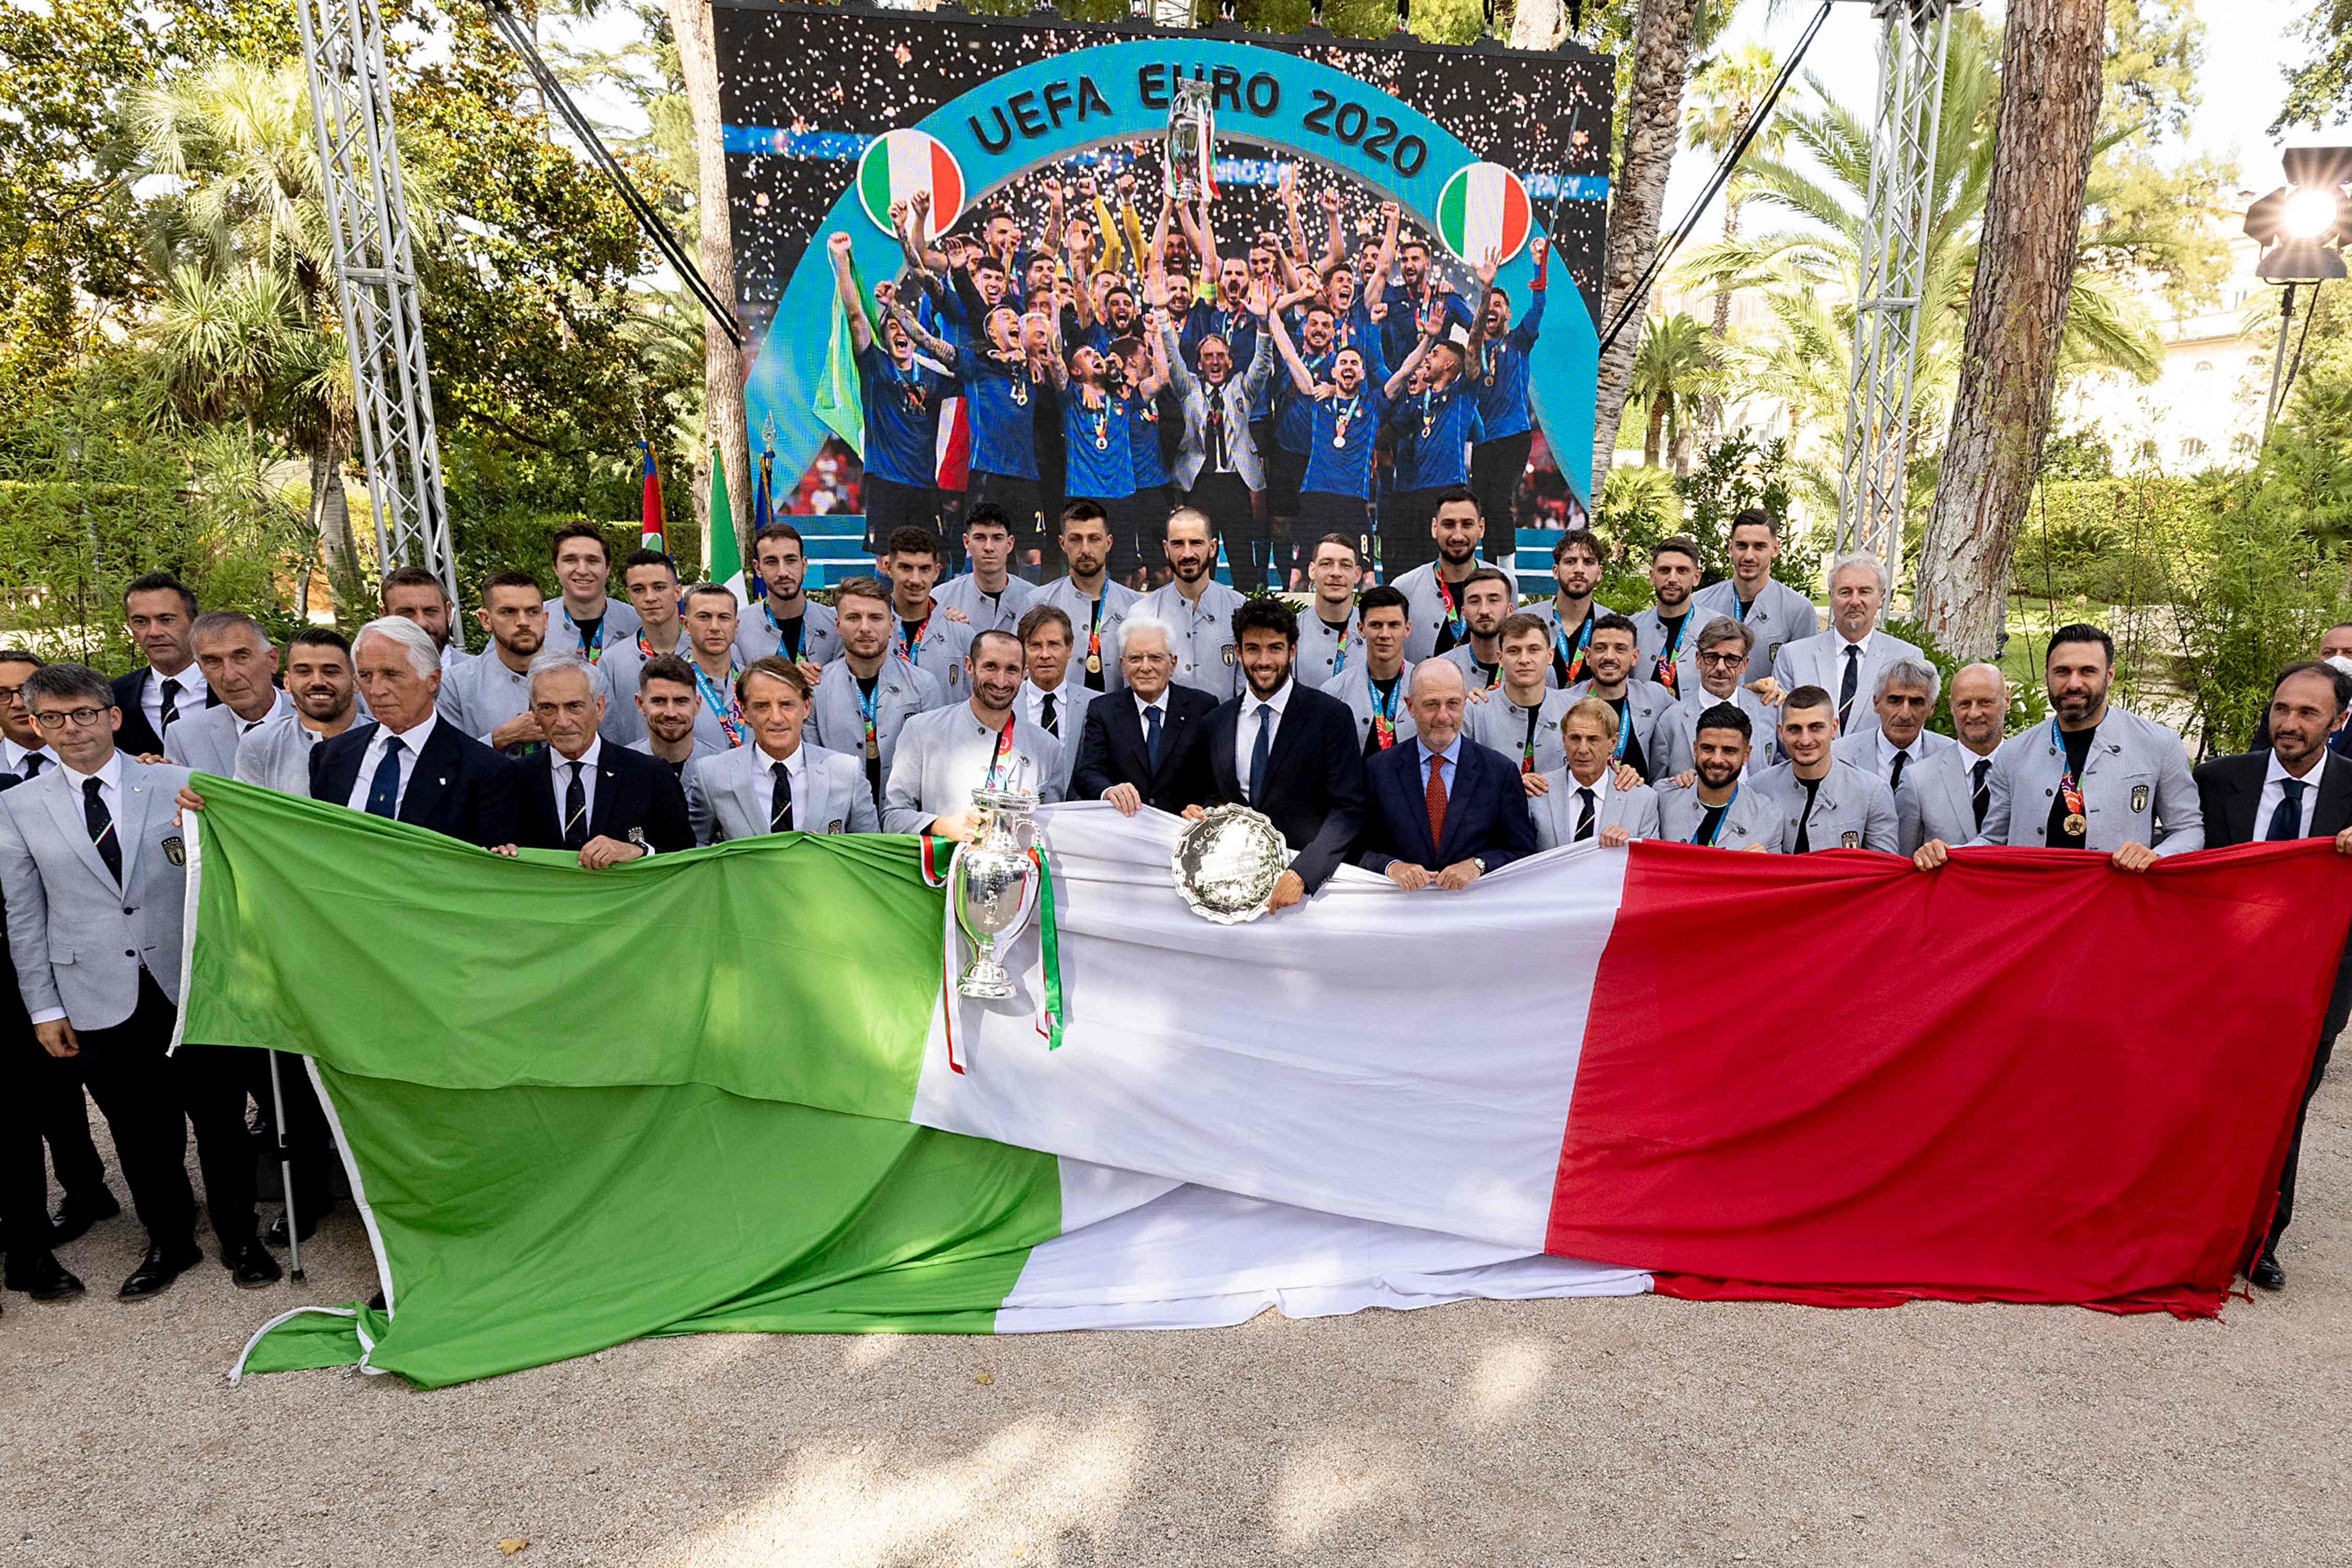 Los integrantes de la Selección de Italia, campeones de Europa, recibirán un premio de 250 mil euros. Este lunes 12 de julio los recibieron diversas autoridades italianas. Foto Prensa Libre: AFP.